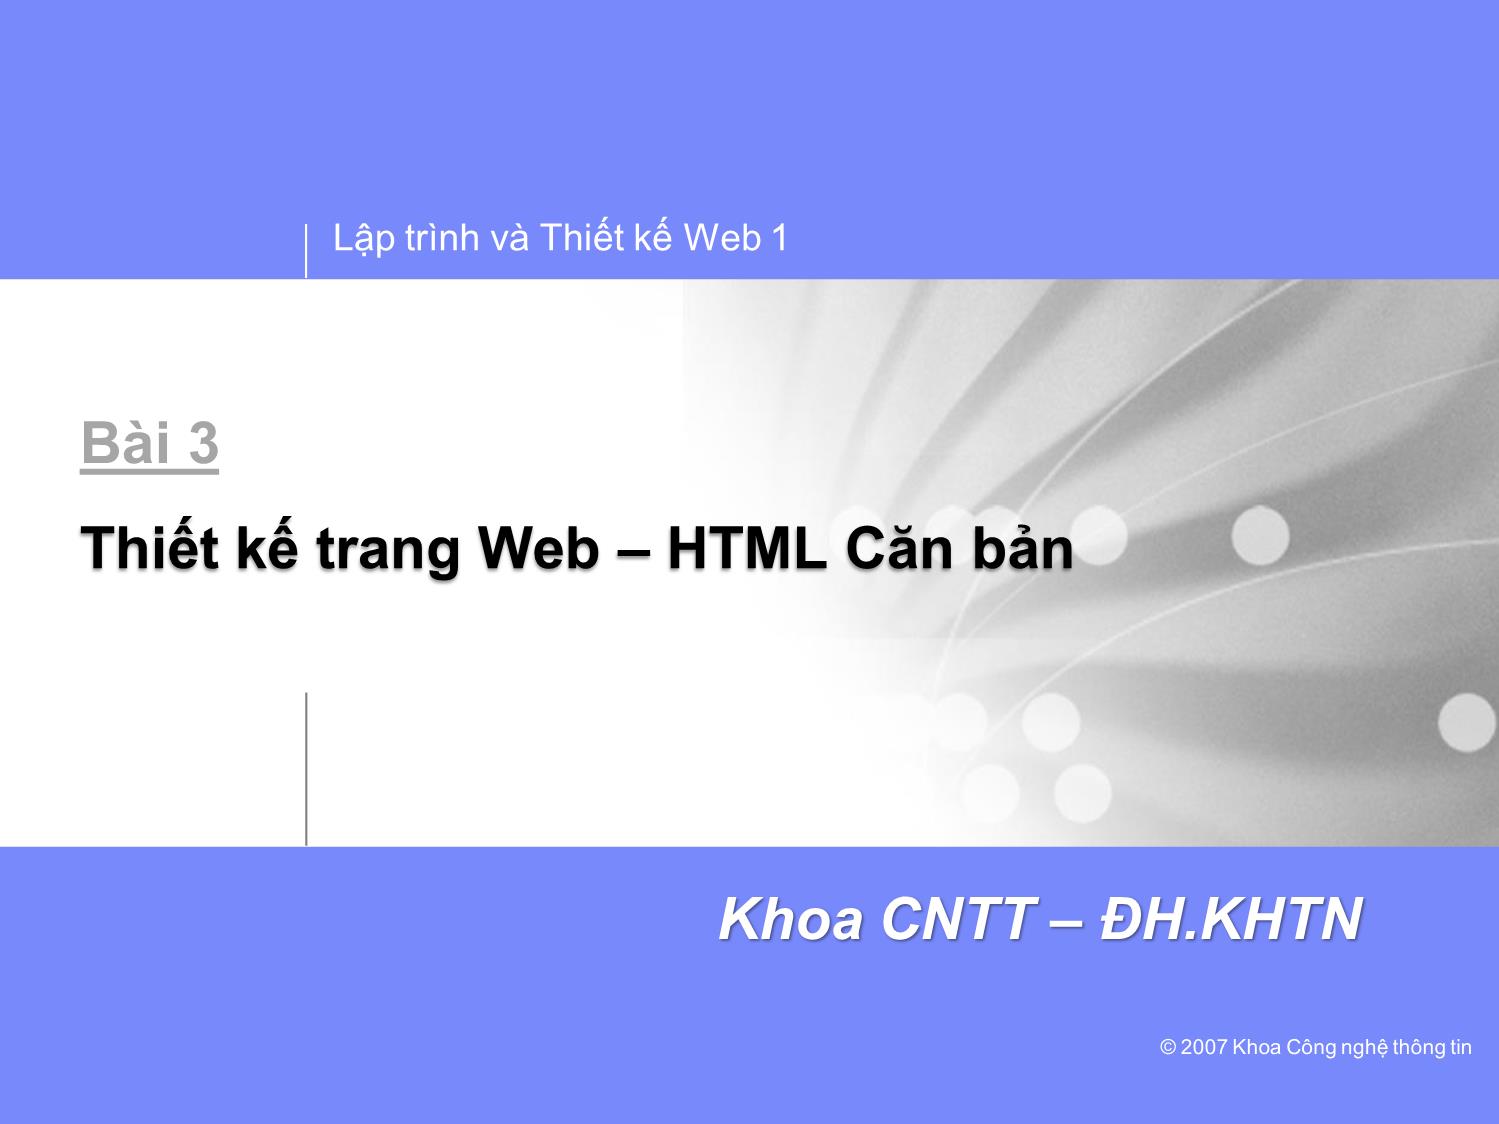 Lập trình và thiết kế Web 1 - Bài 3: Thiết kế trang Web HTML căn bản trang 1